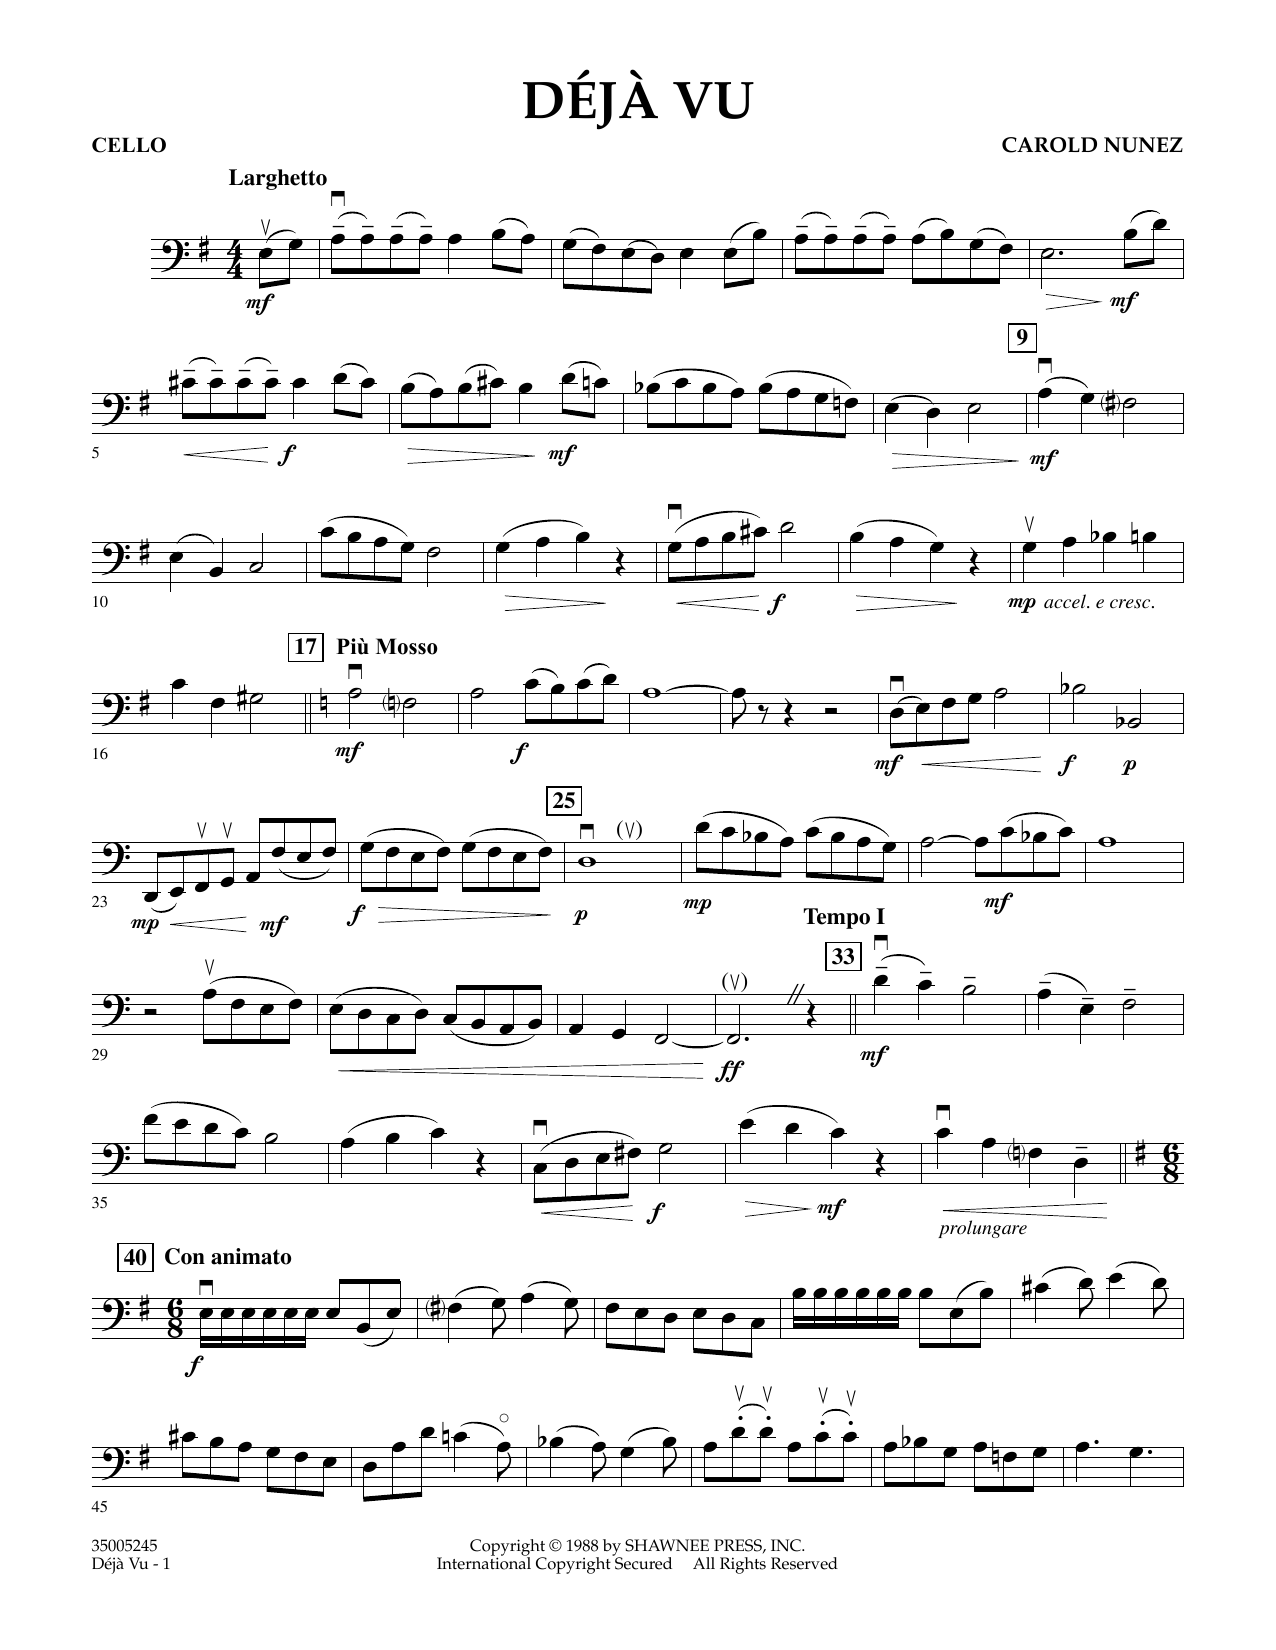 Carold Nunez Deja Vu - Cello sheet music notes and chords arranged for Orchestra